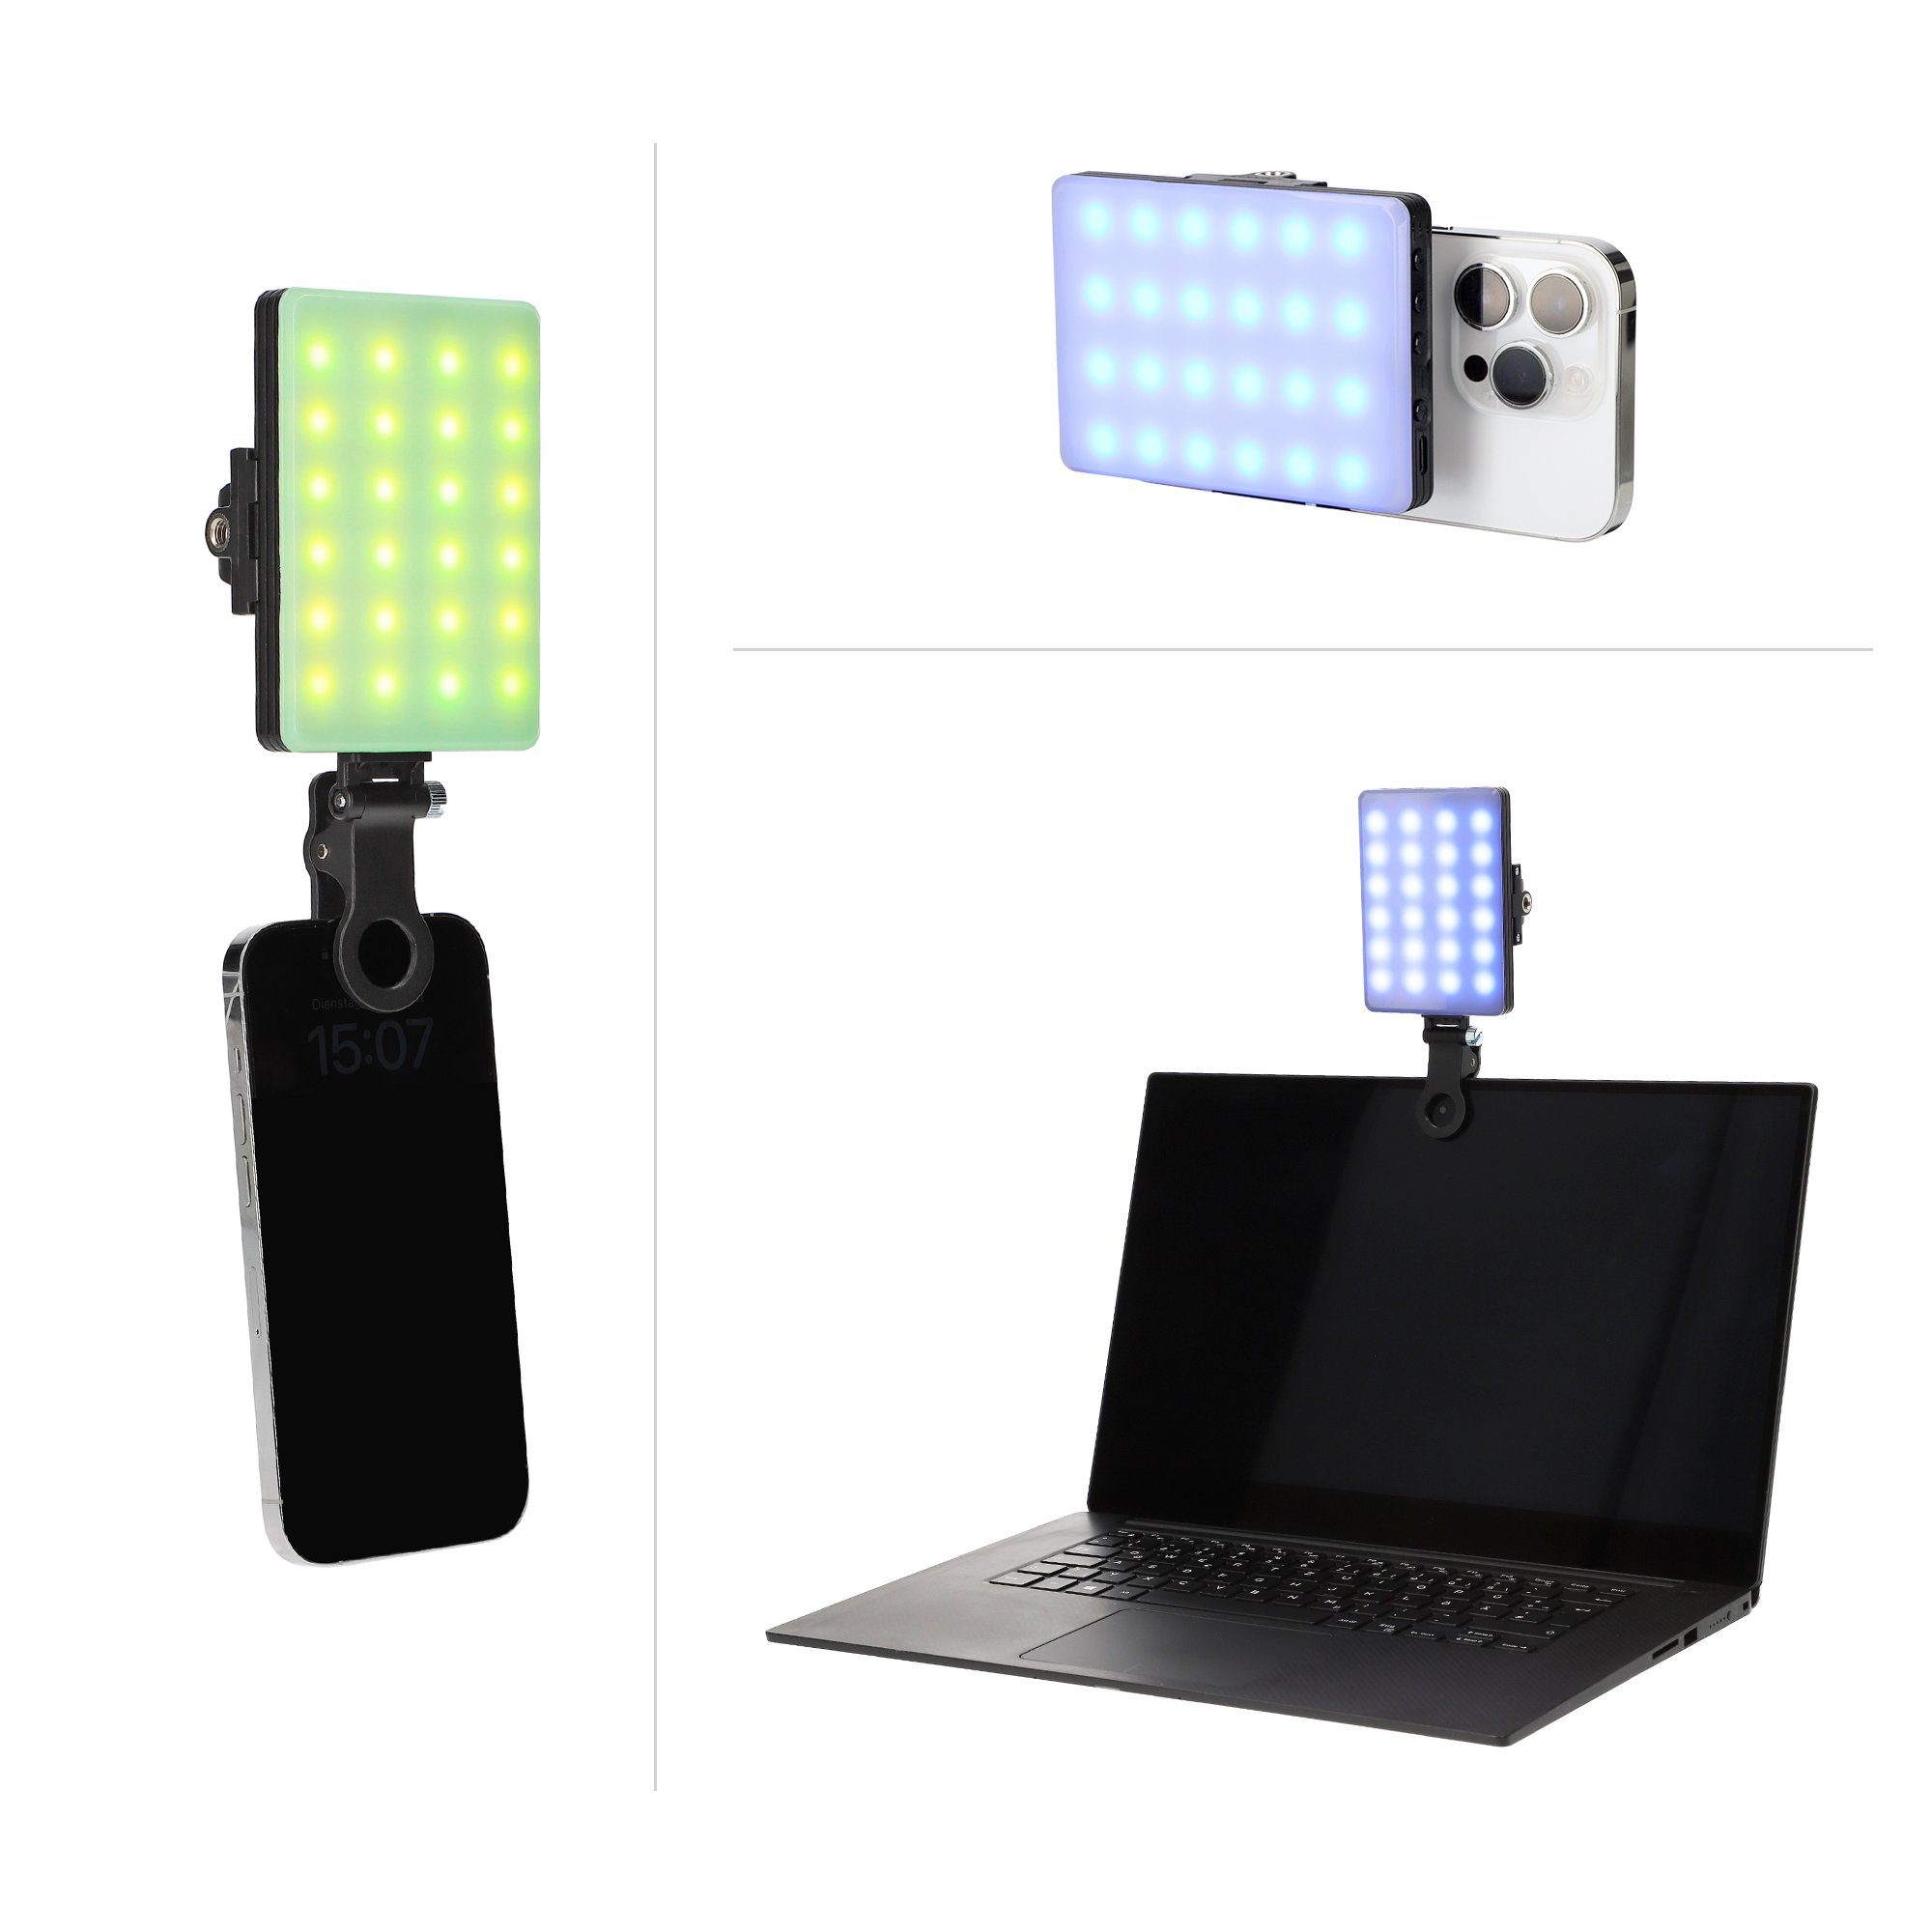 Ladbar Leuchte Bilderleuchte LED durch Perfekte Ambiente ayex Ausleuchtung RGB Type-C LED